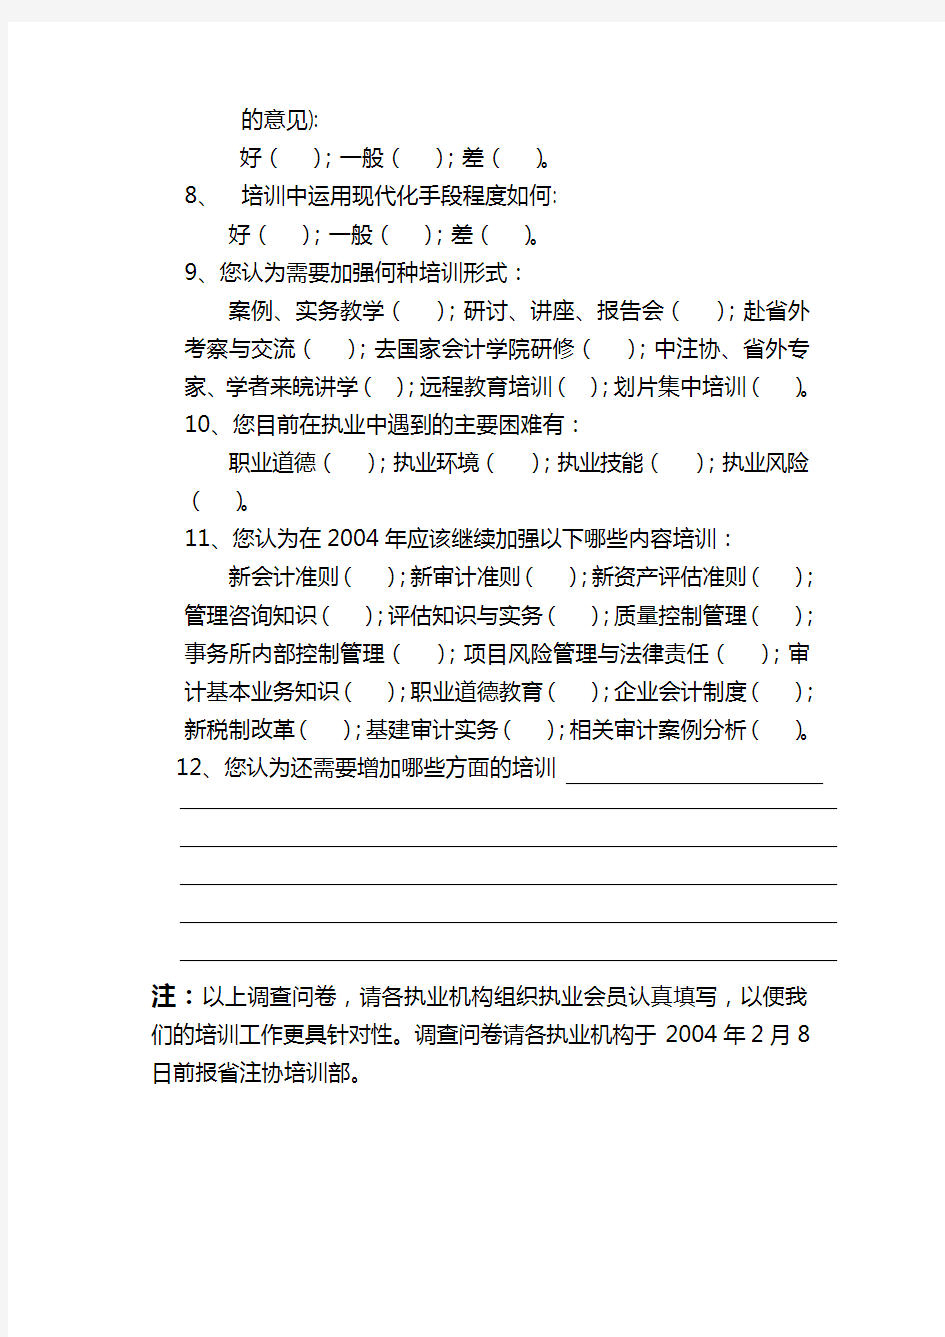 安徽省注册会计师协会后续教育培训调查问卷